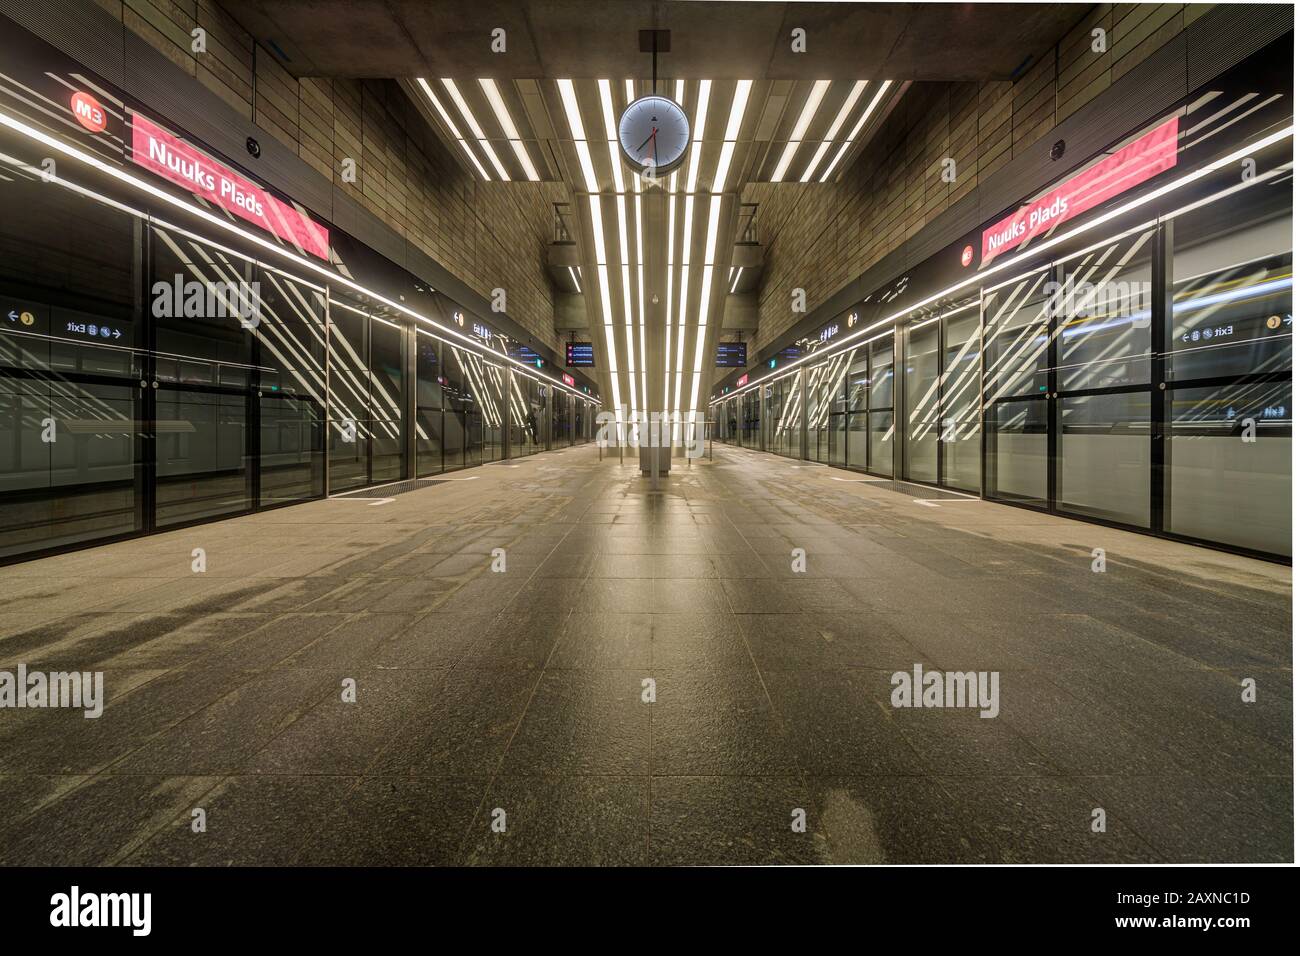 La piattaforma della stazione della metropolitana Nuuk Square sulla metropolitana Cityringen di recente apertura a Copenhagen Foto Stock